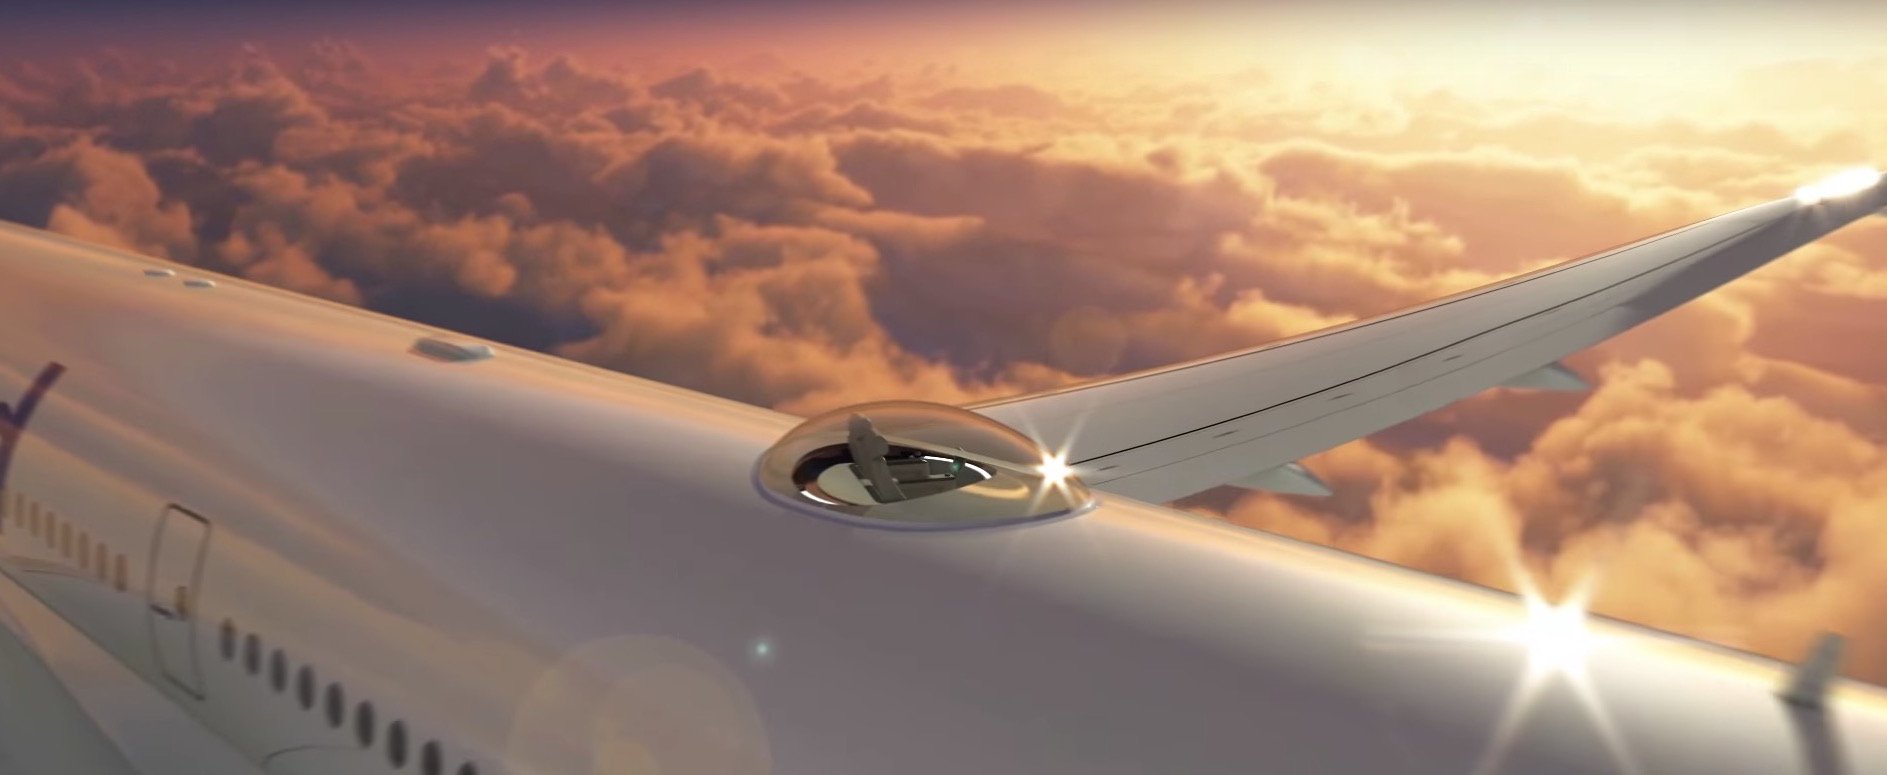 Windspeed SkyDeck капсула панорамный обзор самолеты лайнеры небесная палуба технологии новости отвратительные мужики